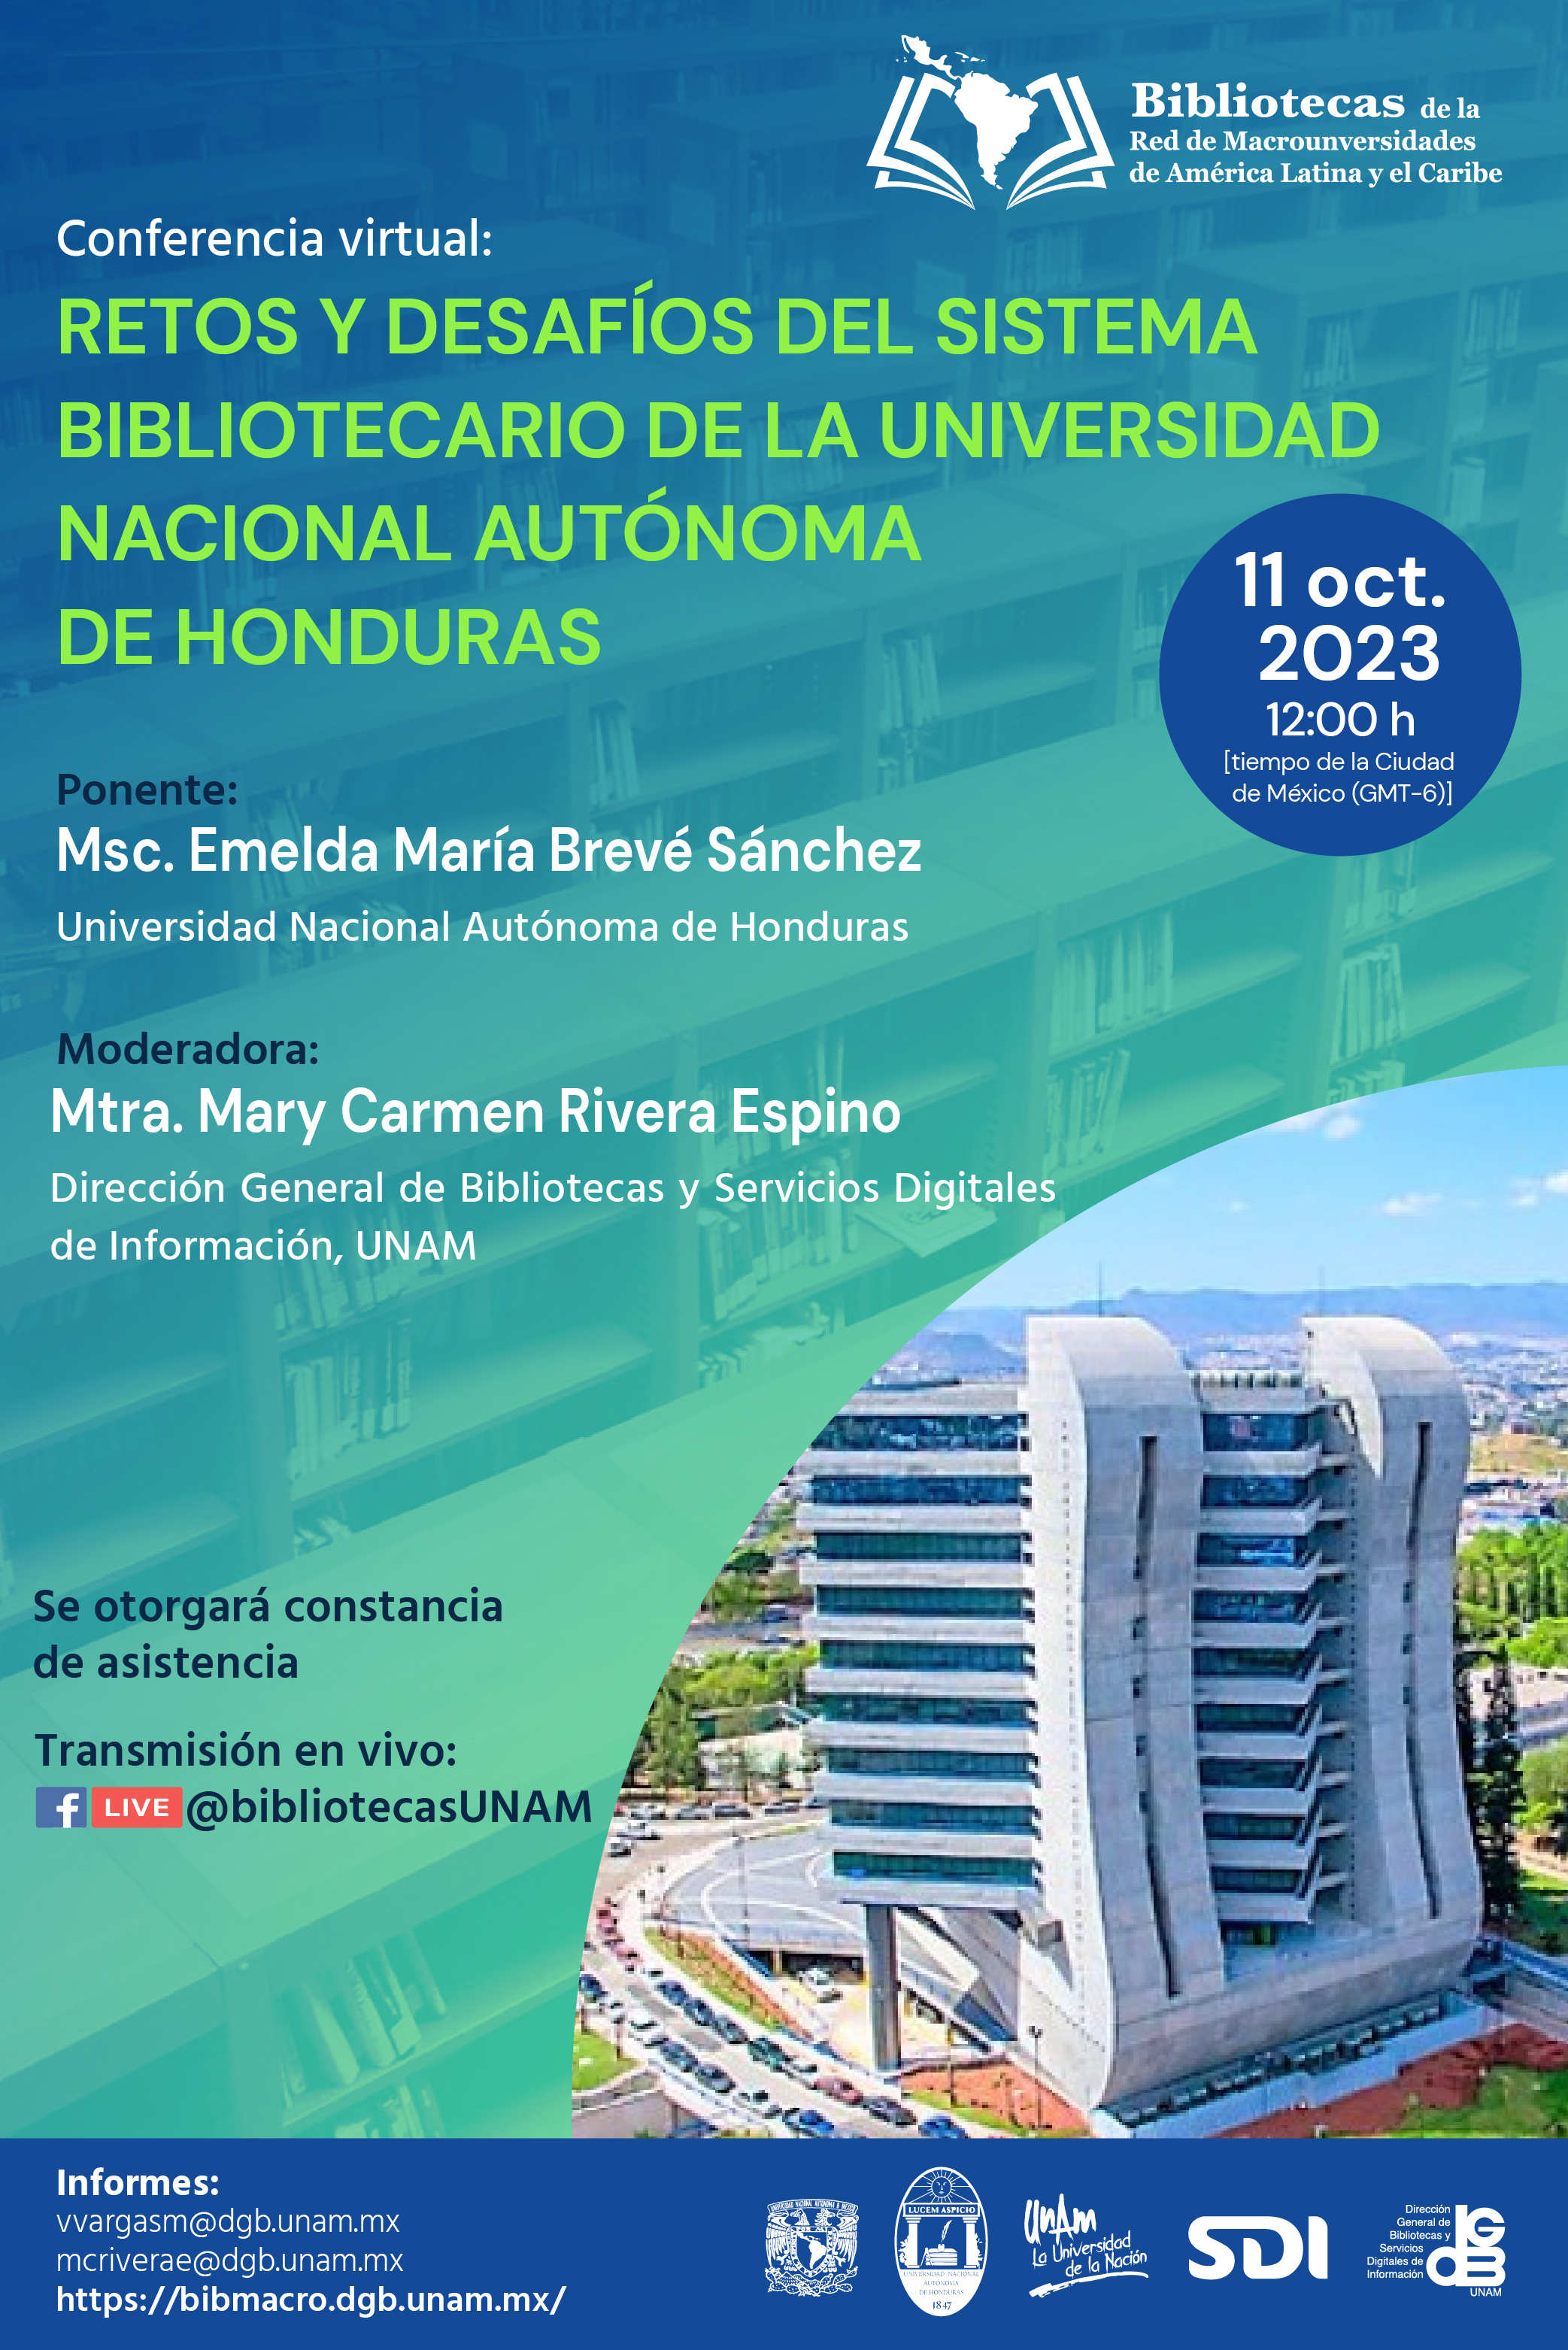 Retos y desafios del sistema bibliotecario de la universidad nacional autonoma de honduras